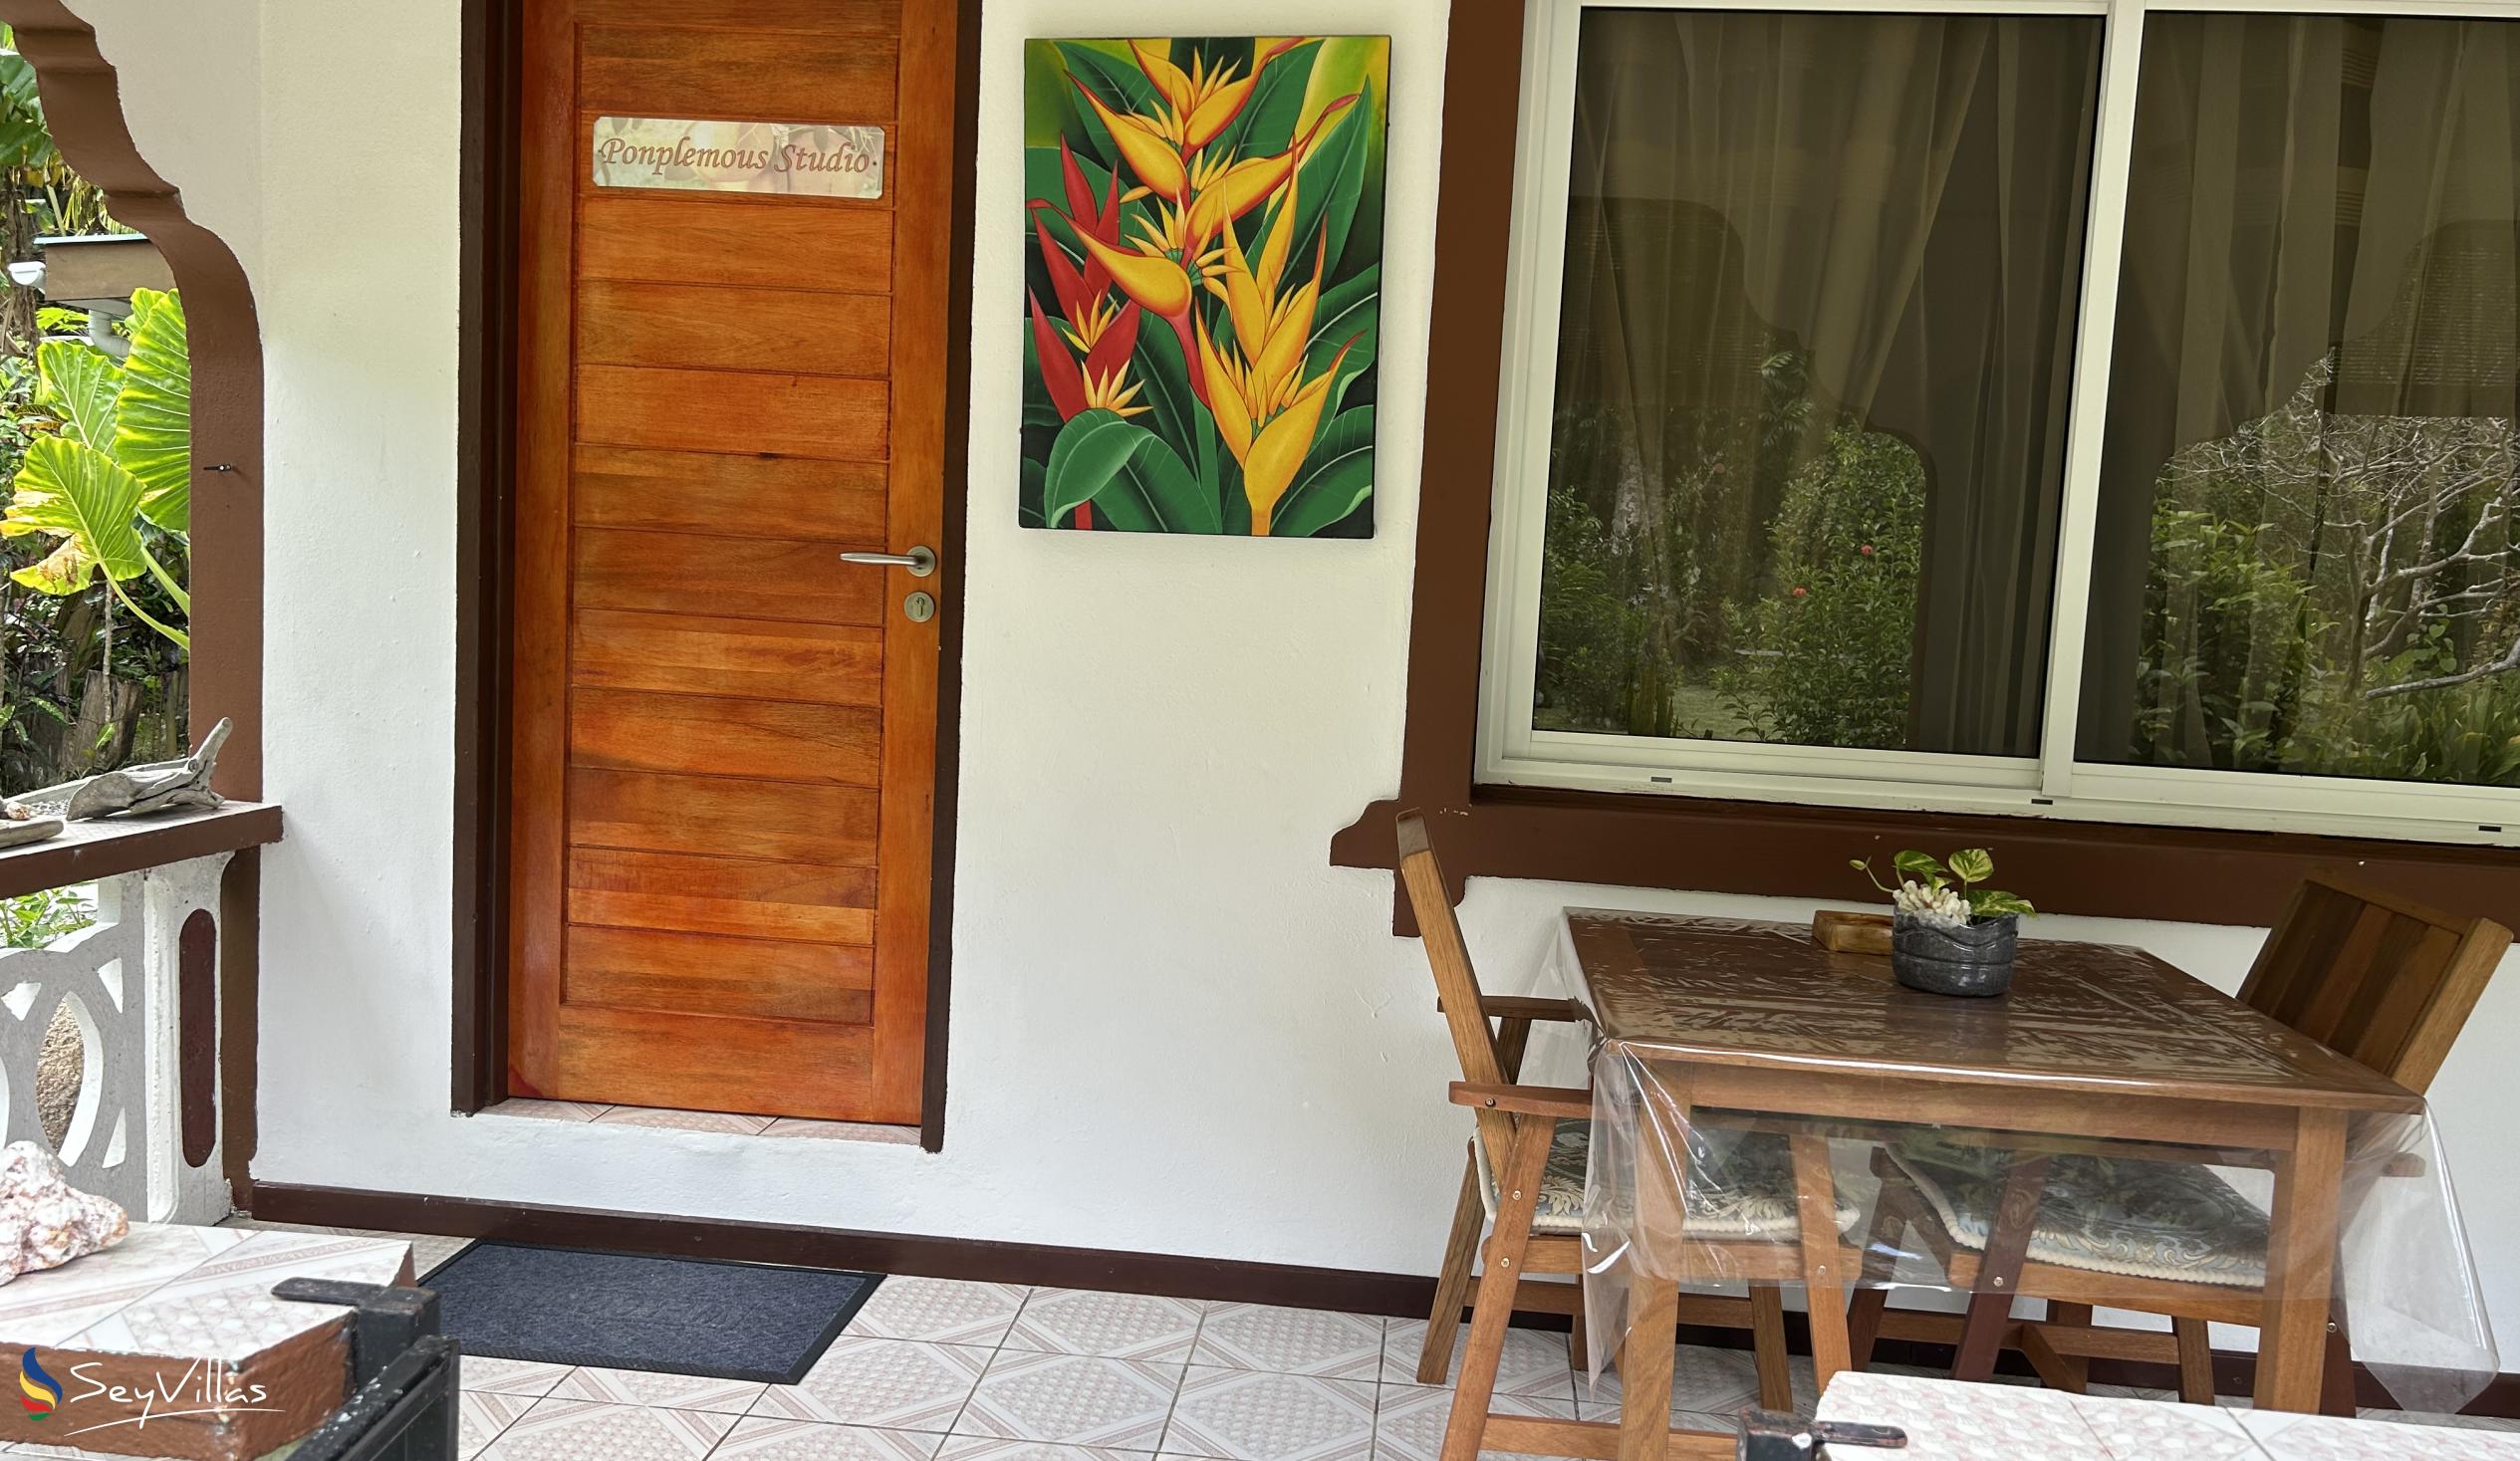 Photo 17: Dan Zoranz Self Catering Guest House - Ponplemous Studio - La Digue (Seychelles)